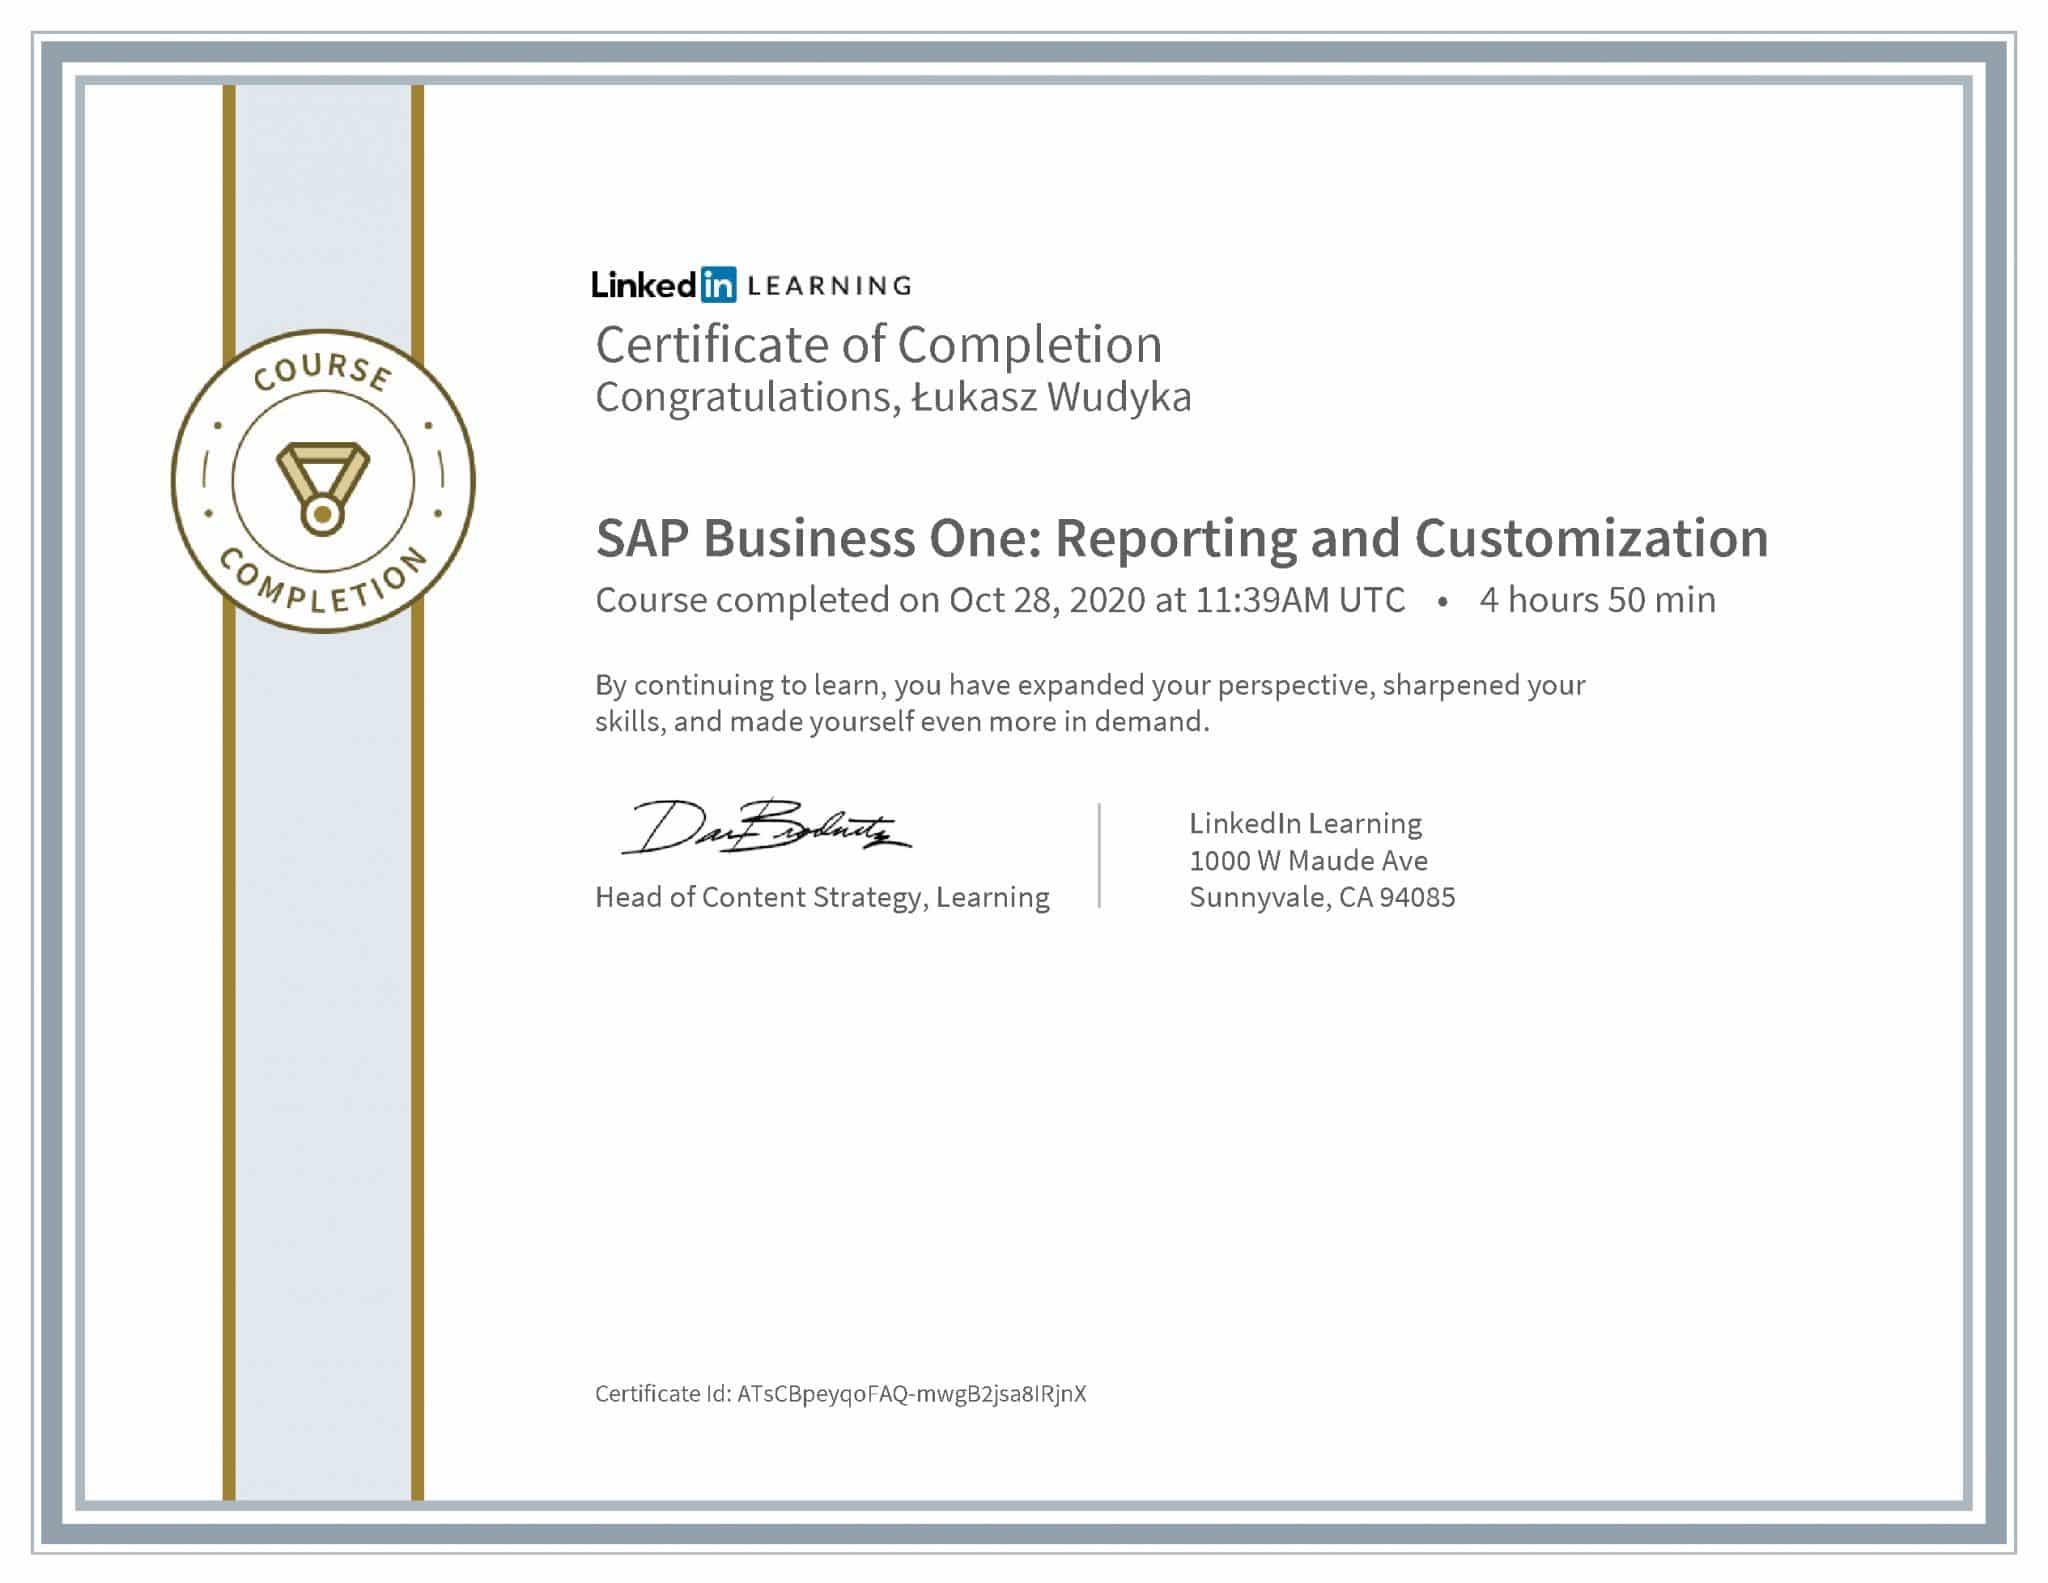 Łukasz Wudyka certyfikat LinkedIn SAP Business One: Reporting and Customization